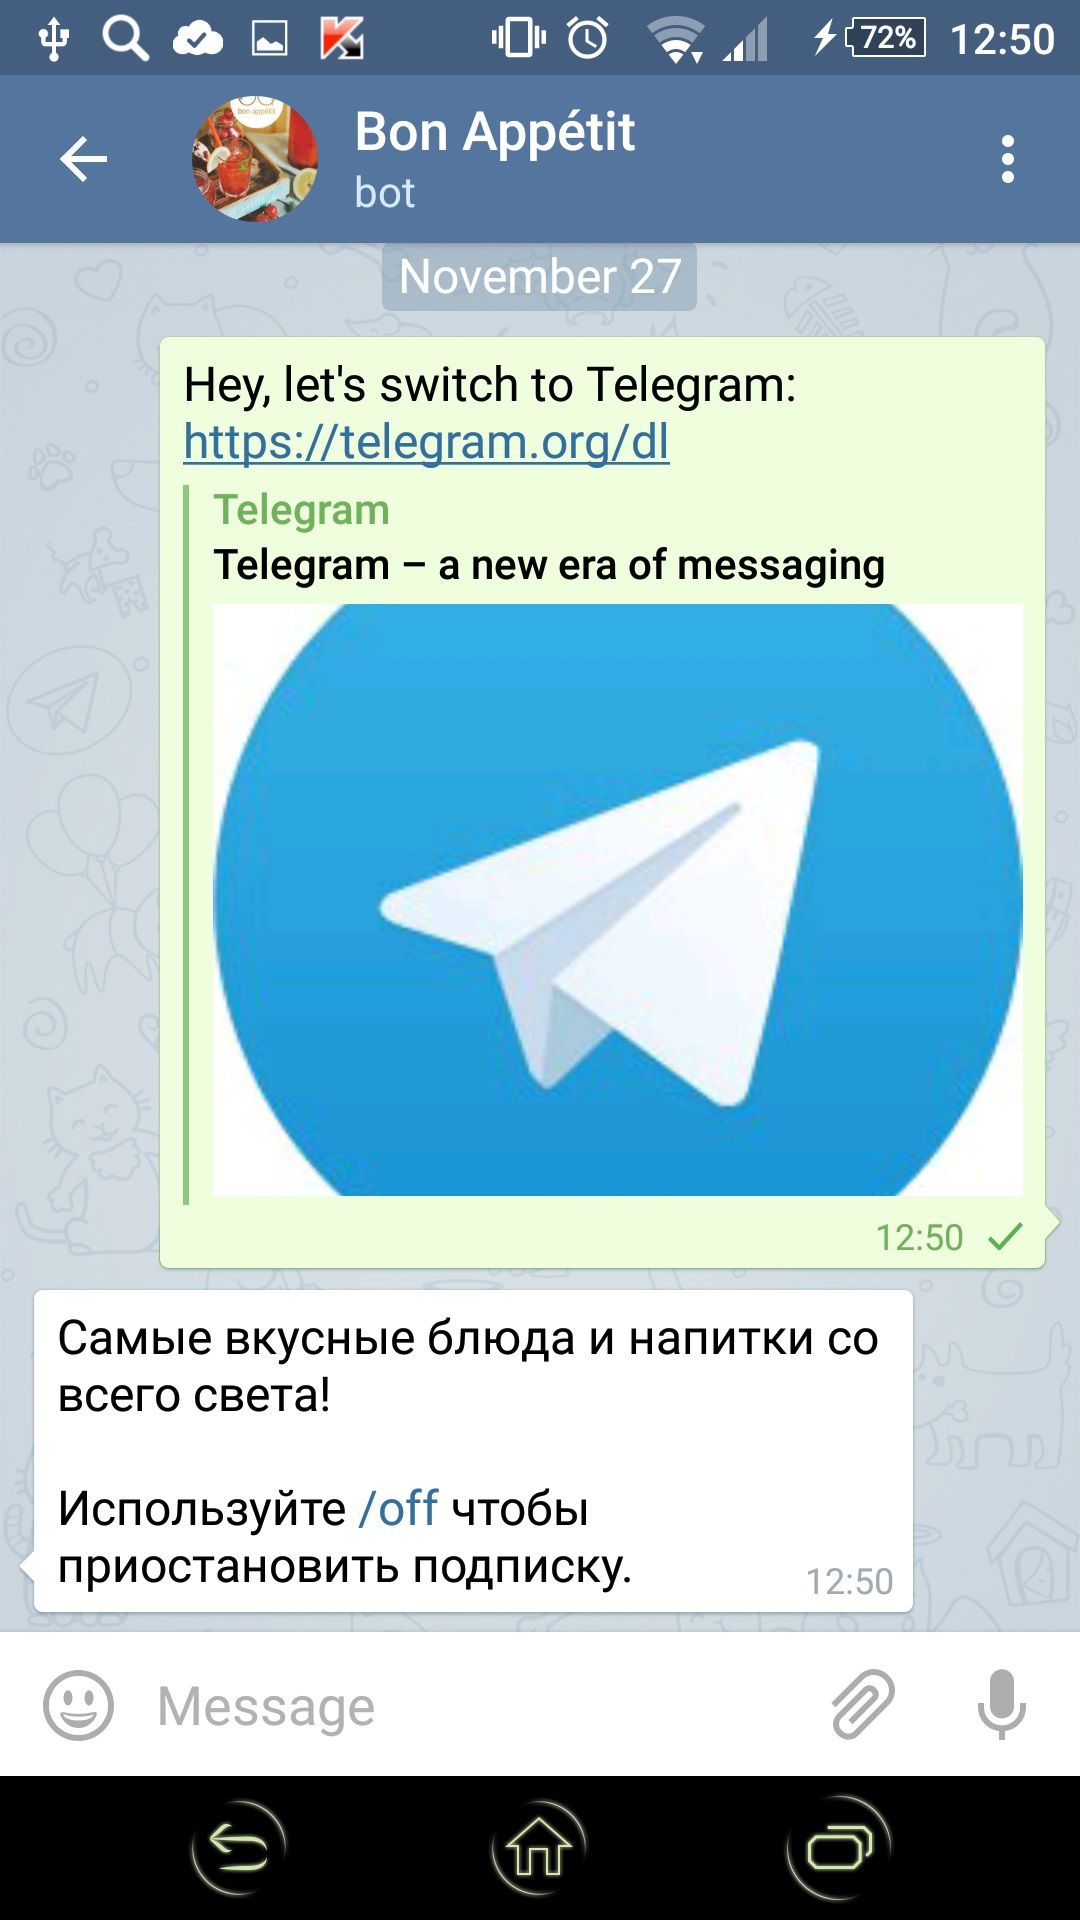 Приложение телеграмм скачать бесплатно на телефон на русском языке без вирусов фото 99